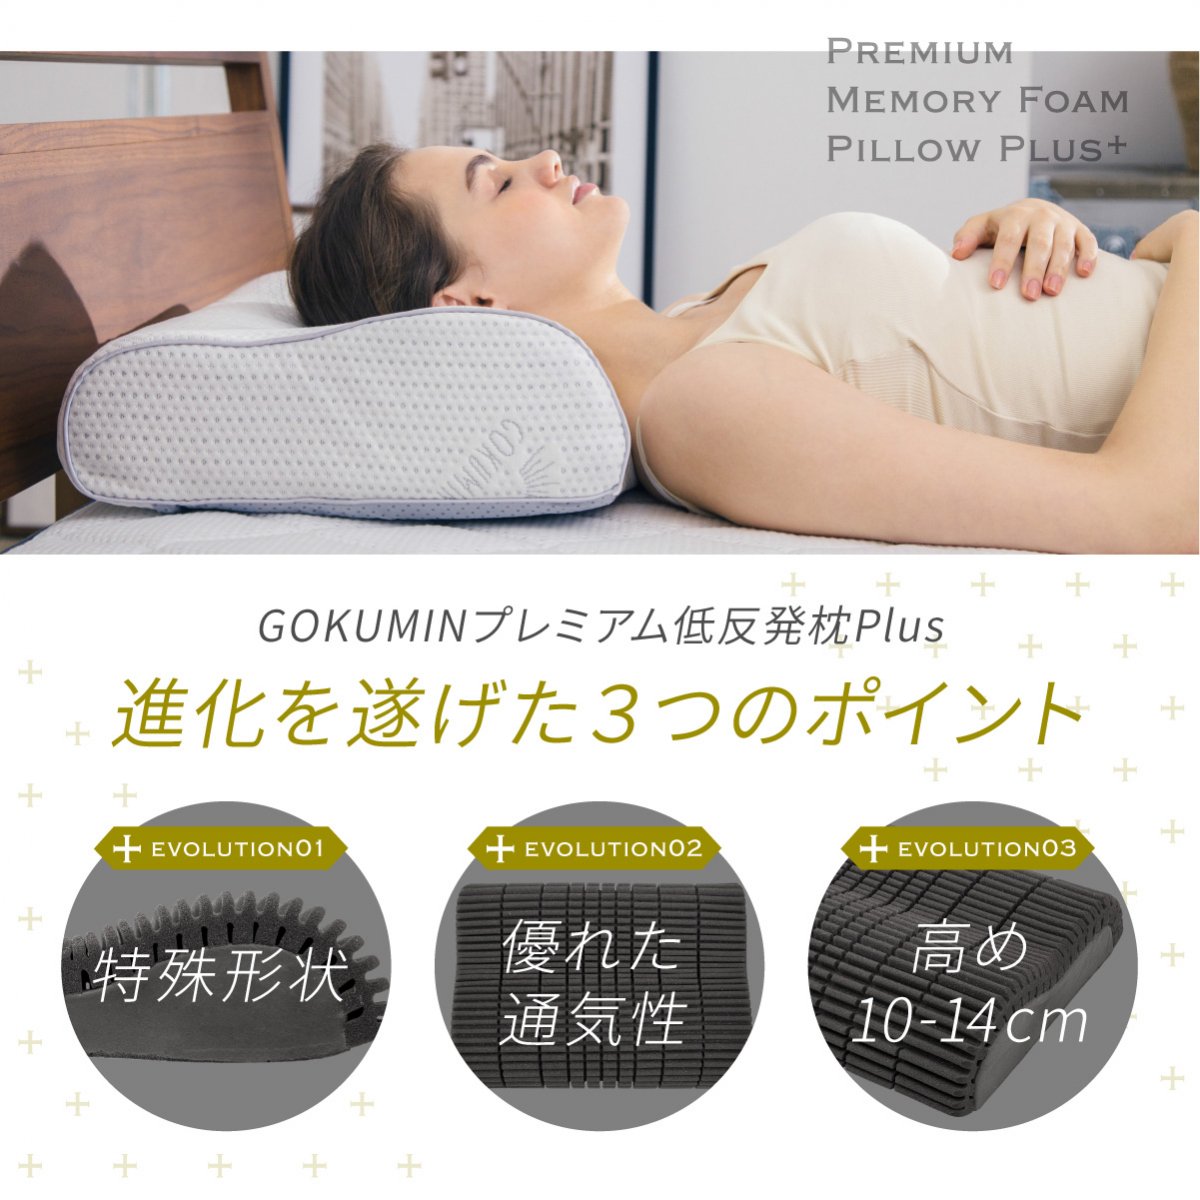 プレミアム低反発枕Plus | 枕であなたの悩みを解決 - GOKUMIN(極眠)